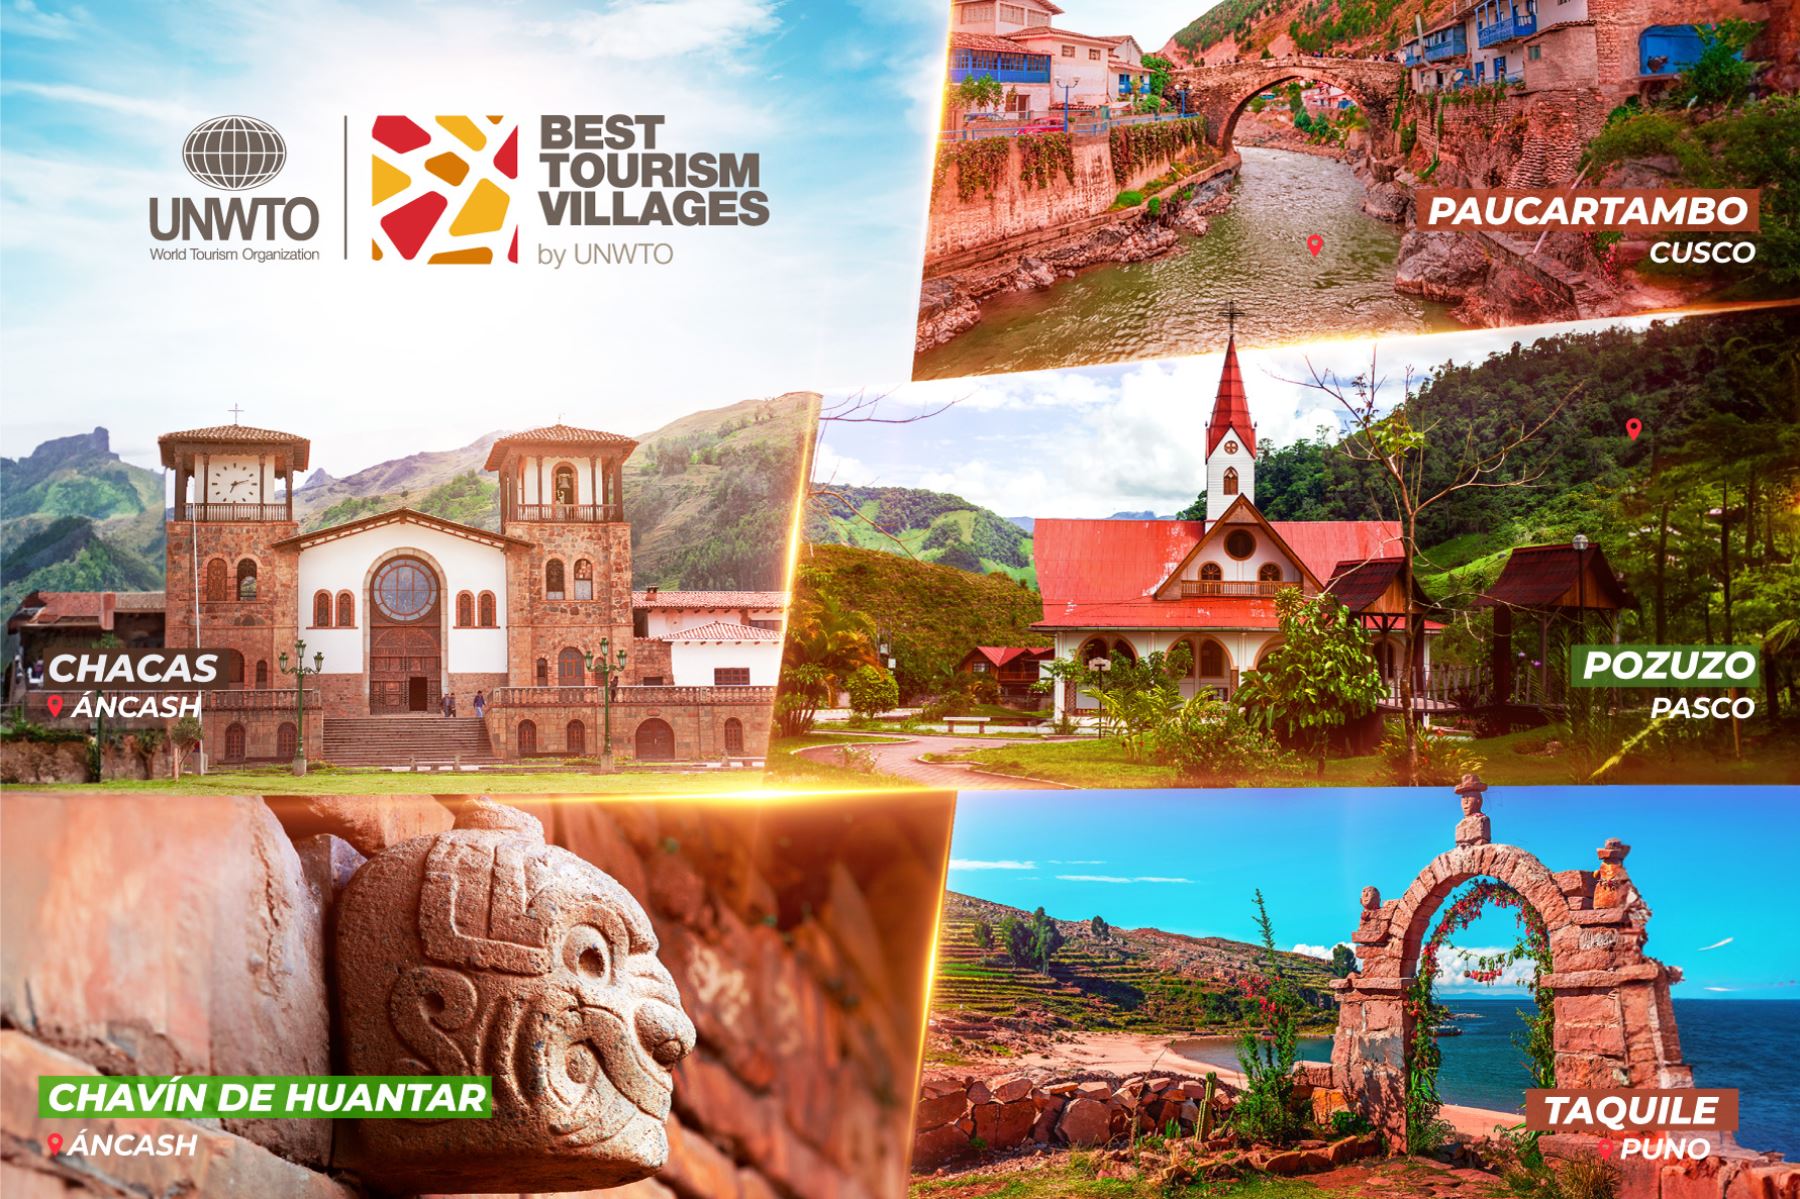 Organización Mundial de Turismo distinguió a Pozuzo Taquile, Chacas, Chavín de Huantar y Paucartambo como los "Mejores Pueblos Turísticos del Mundo 2023".